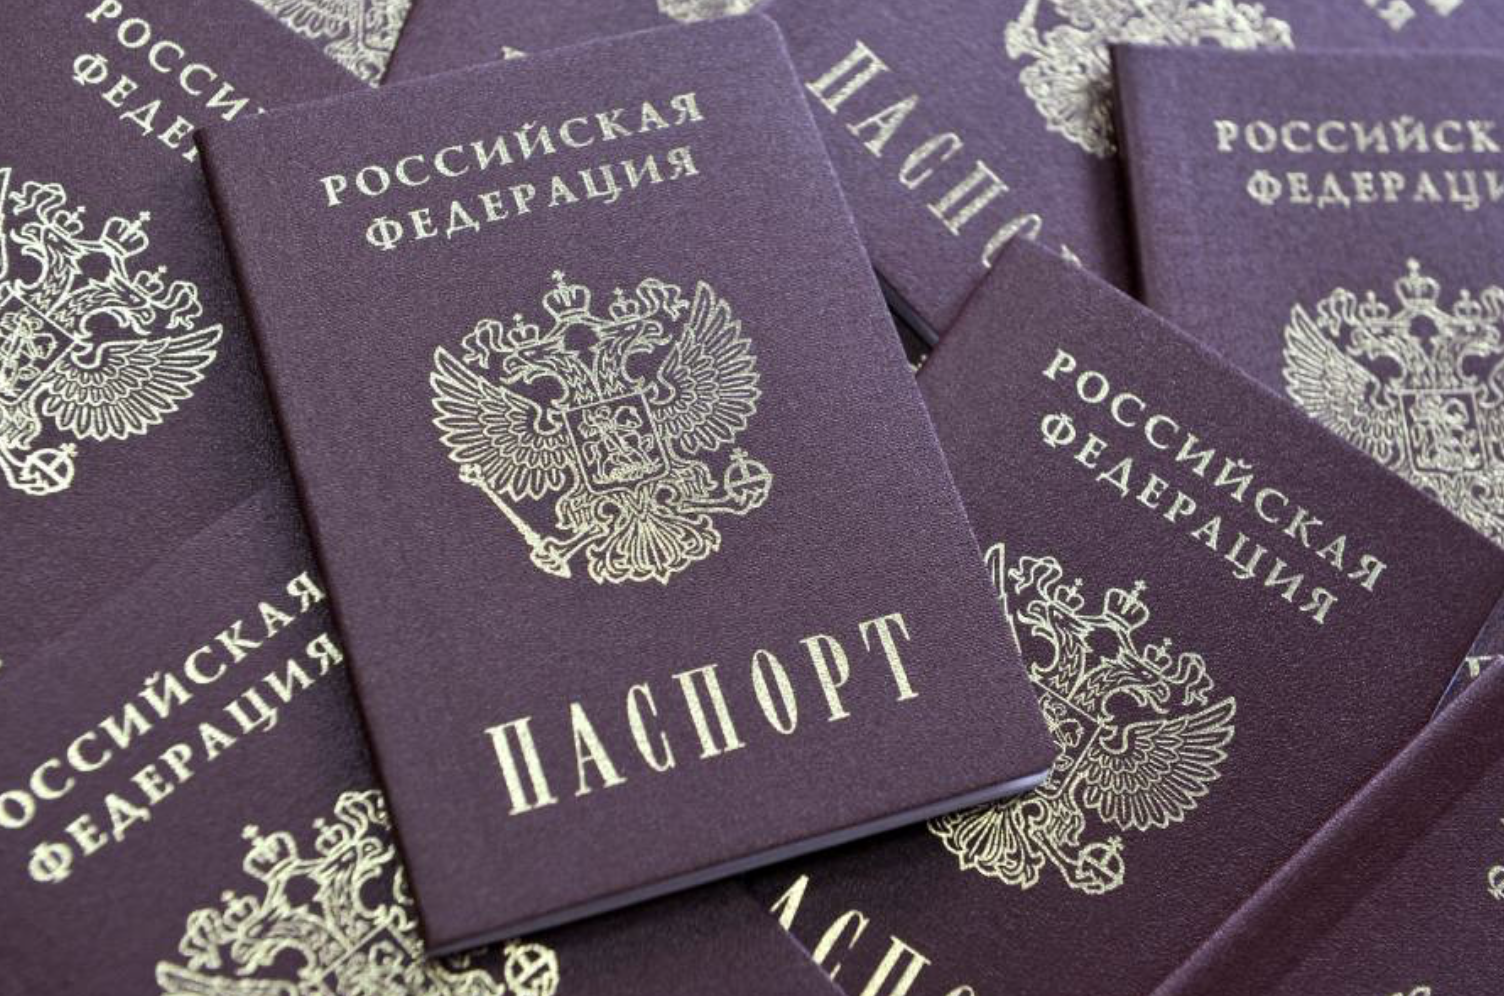 Проверка живости паспорта и выявление атак на предъявление